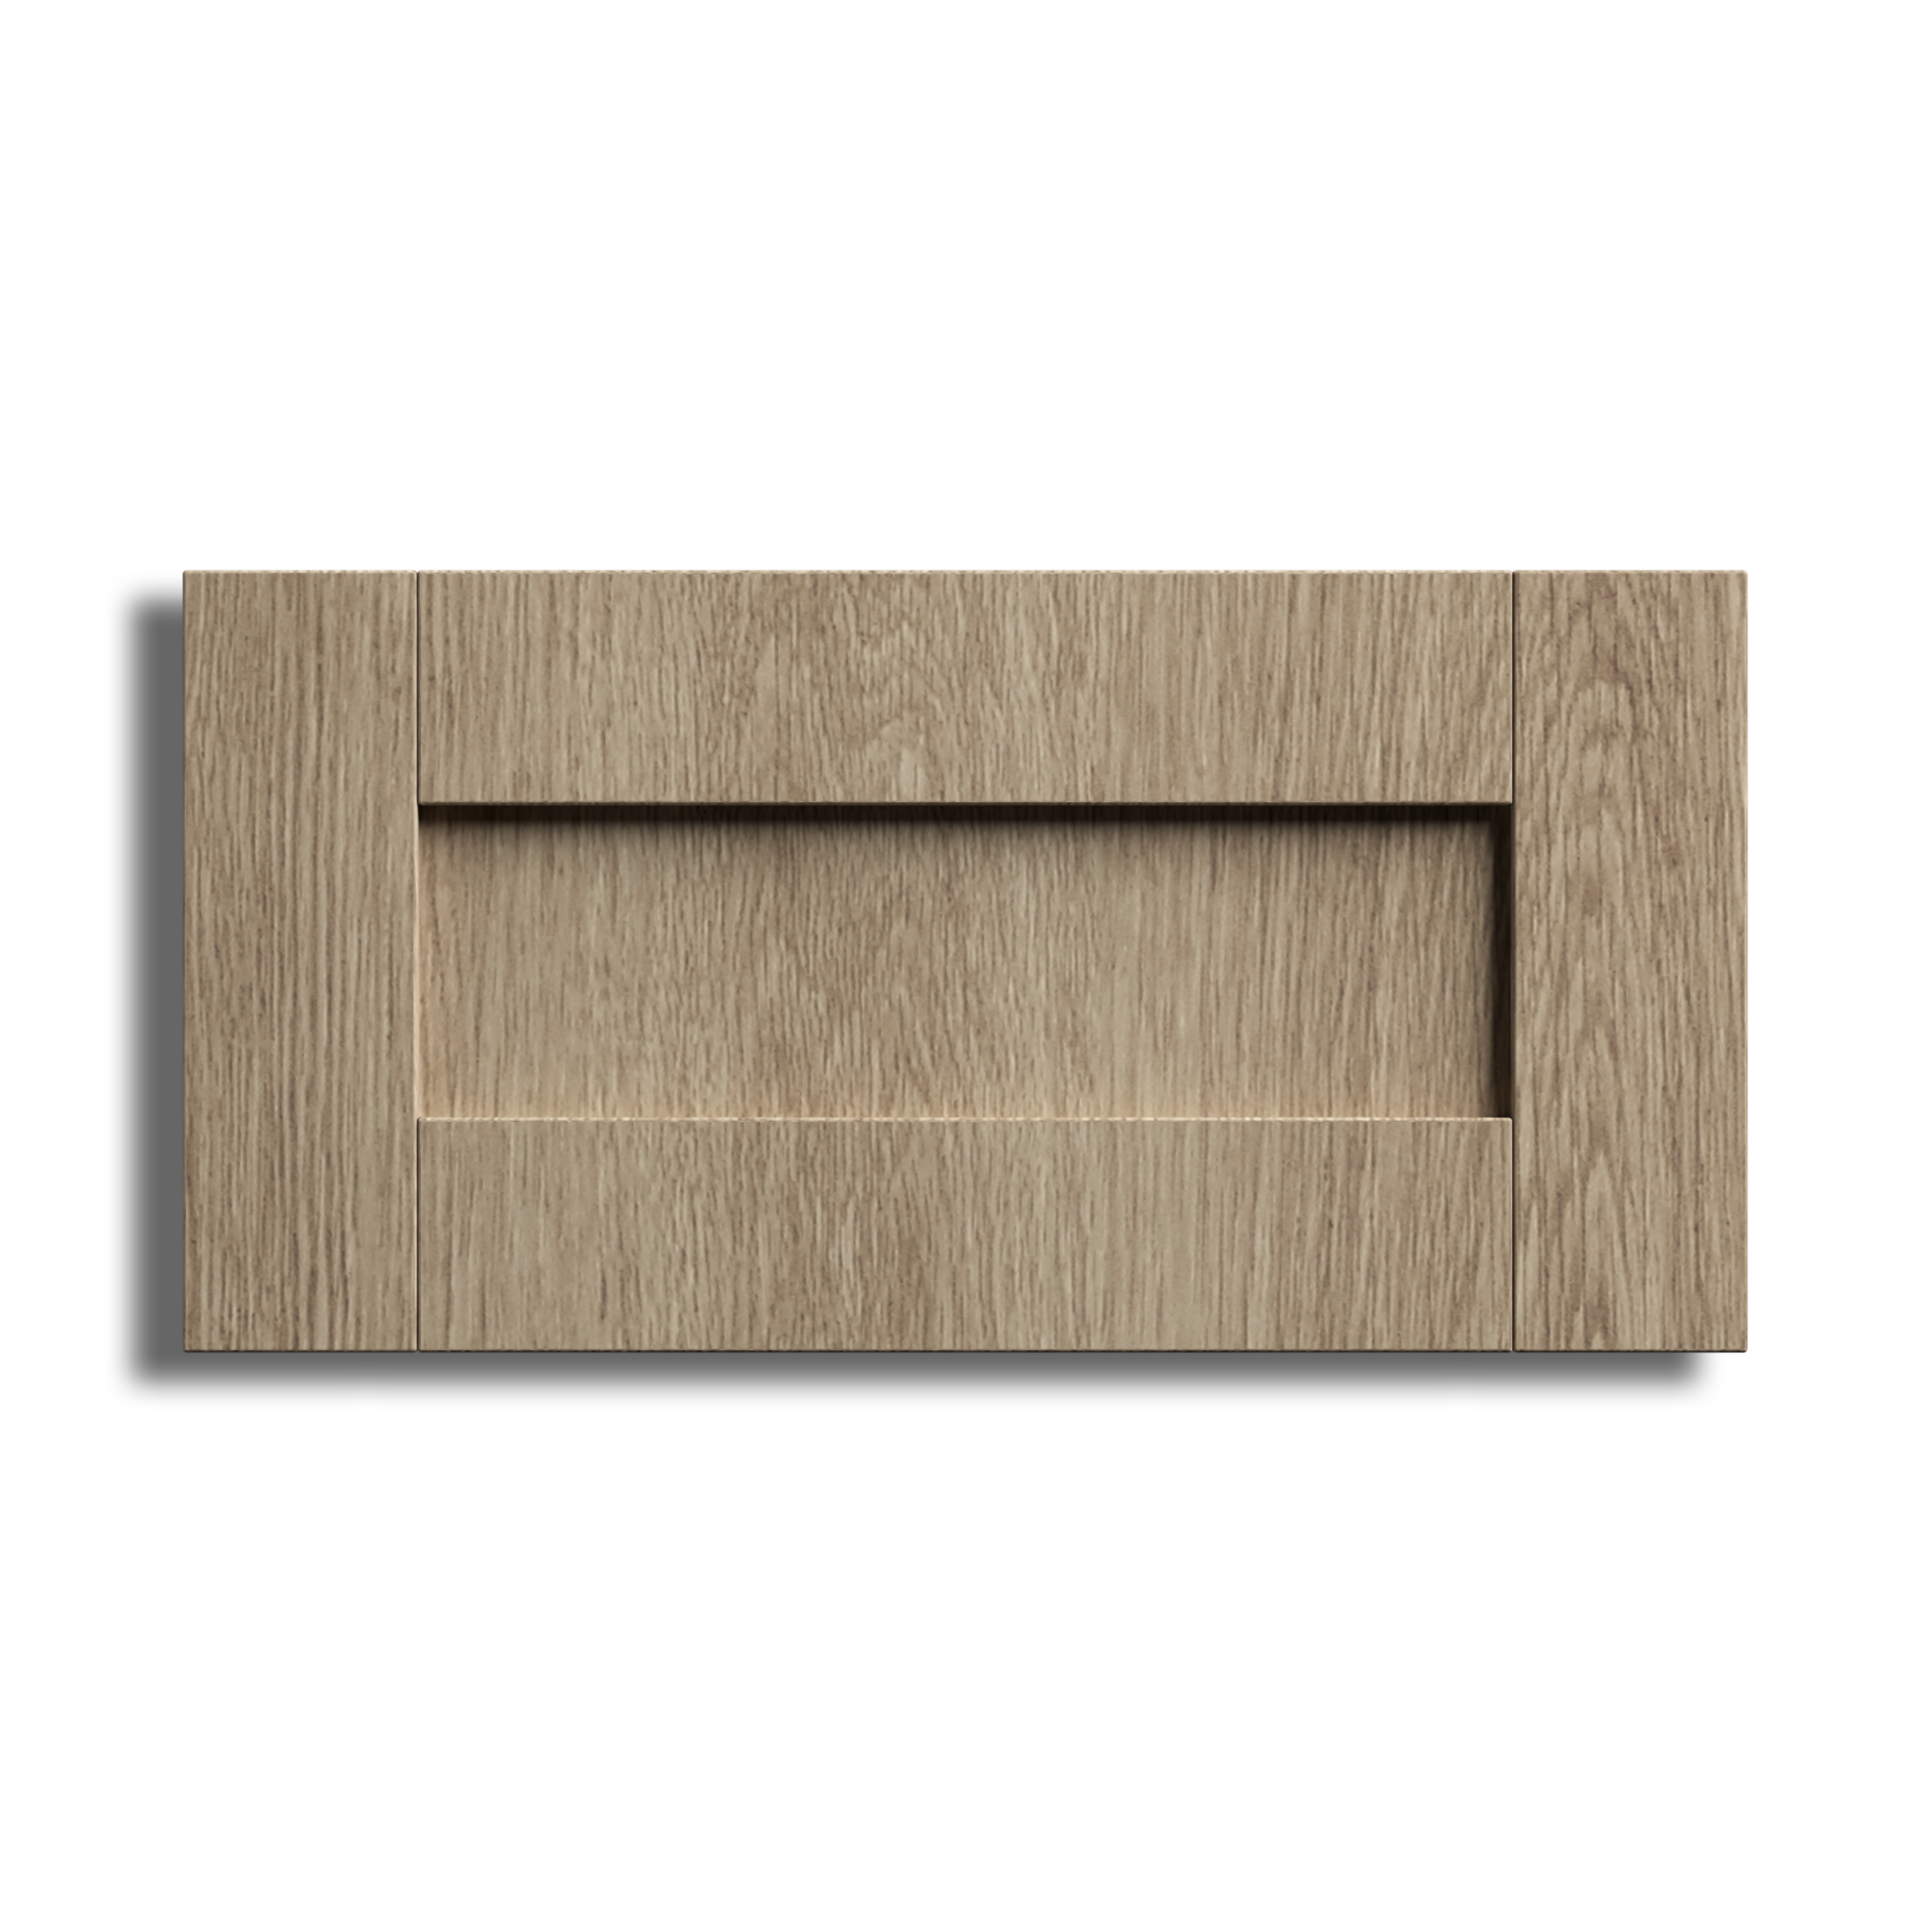 Full Size Sample | Timber Veneer | MADE TO ORDER IN 4 WKS